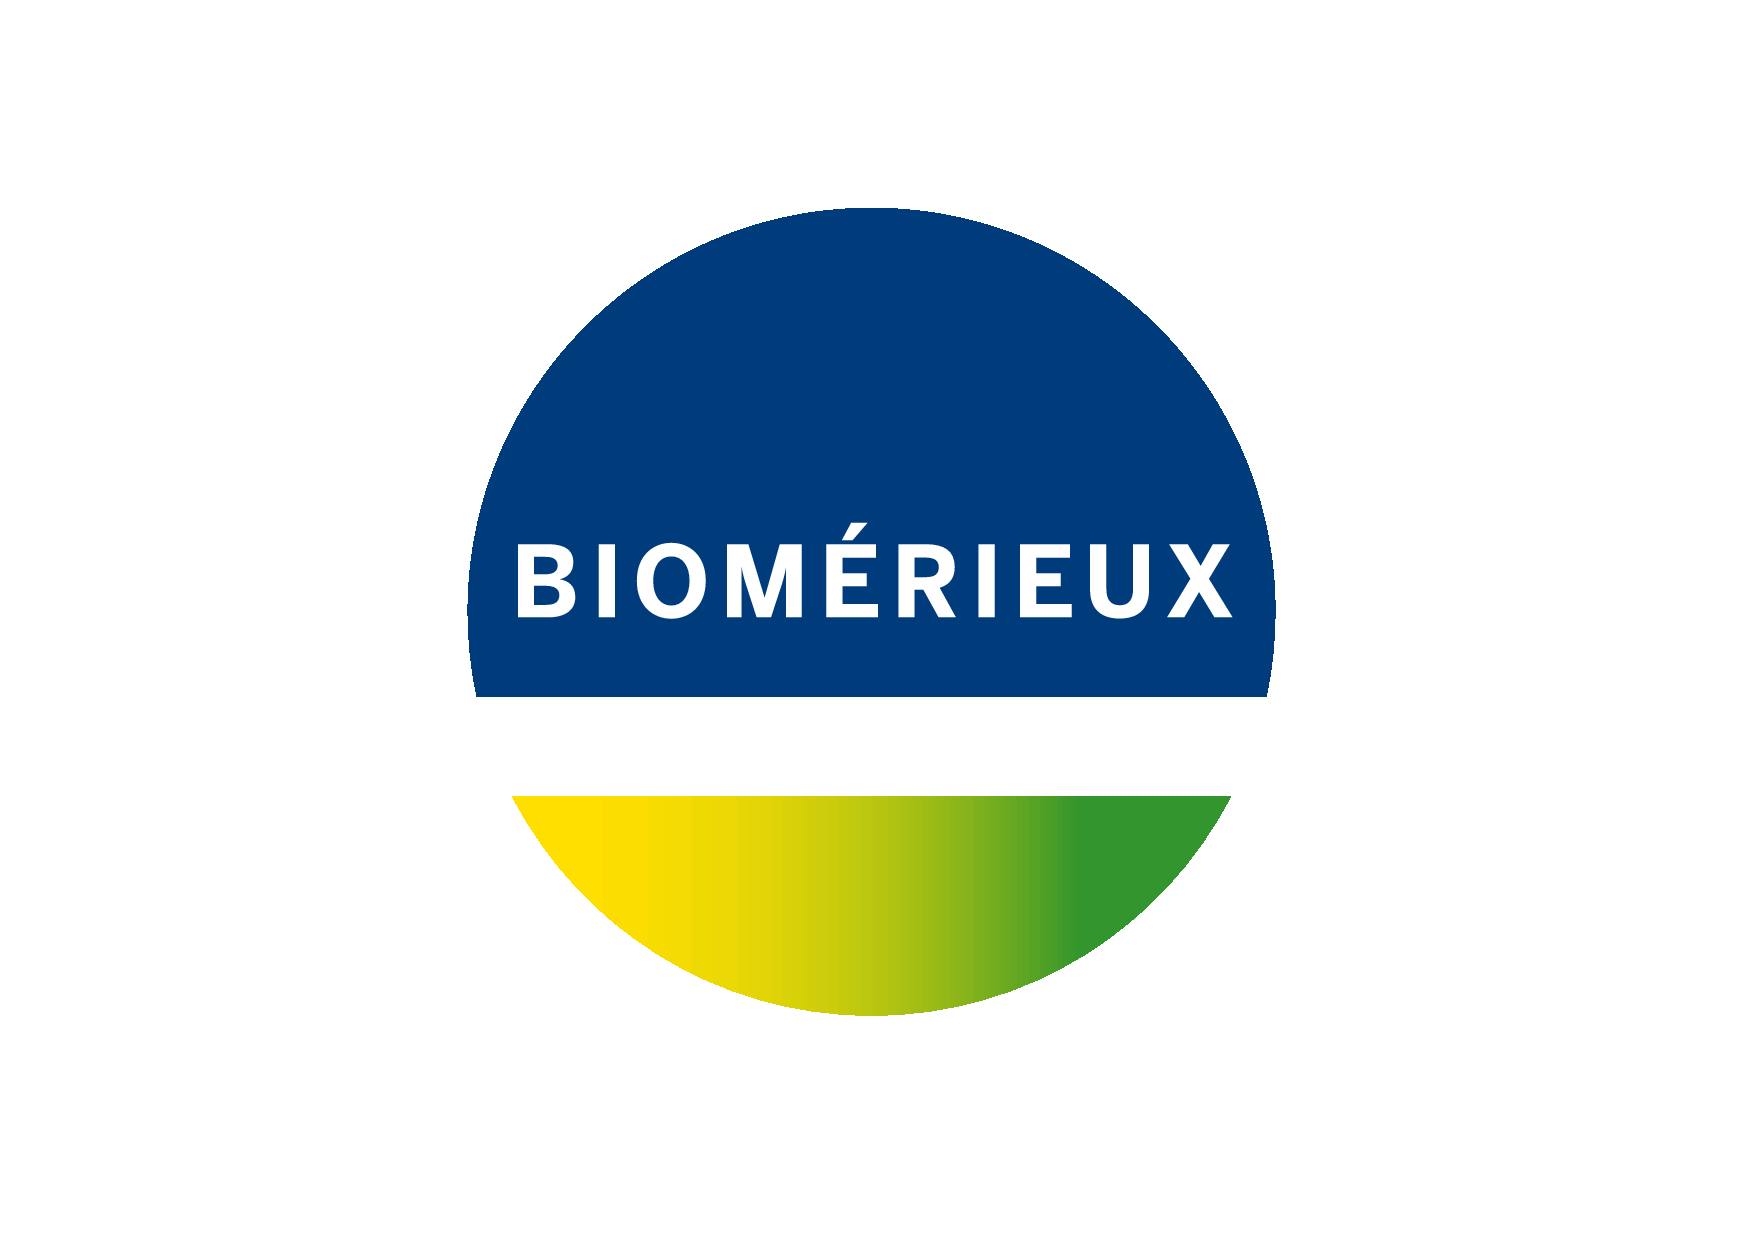 www.biomerieux.com